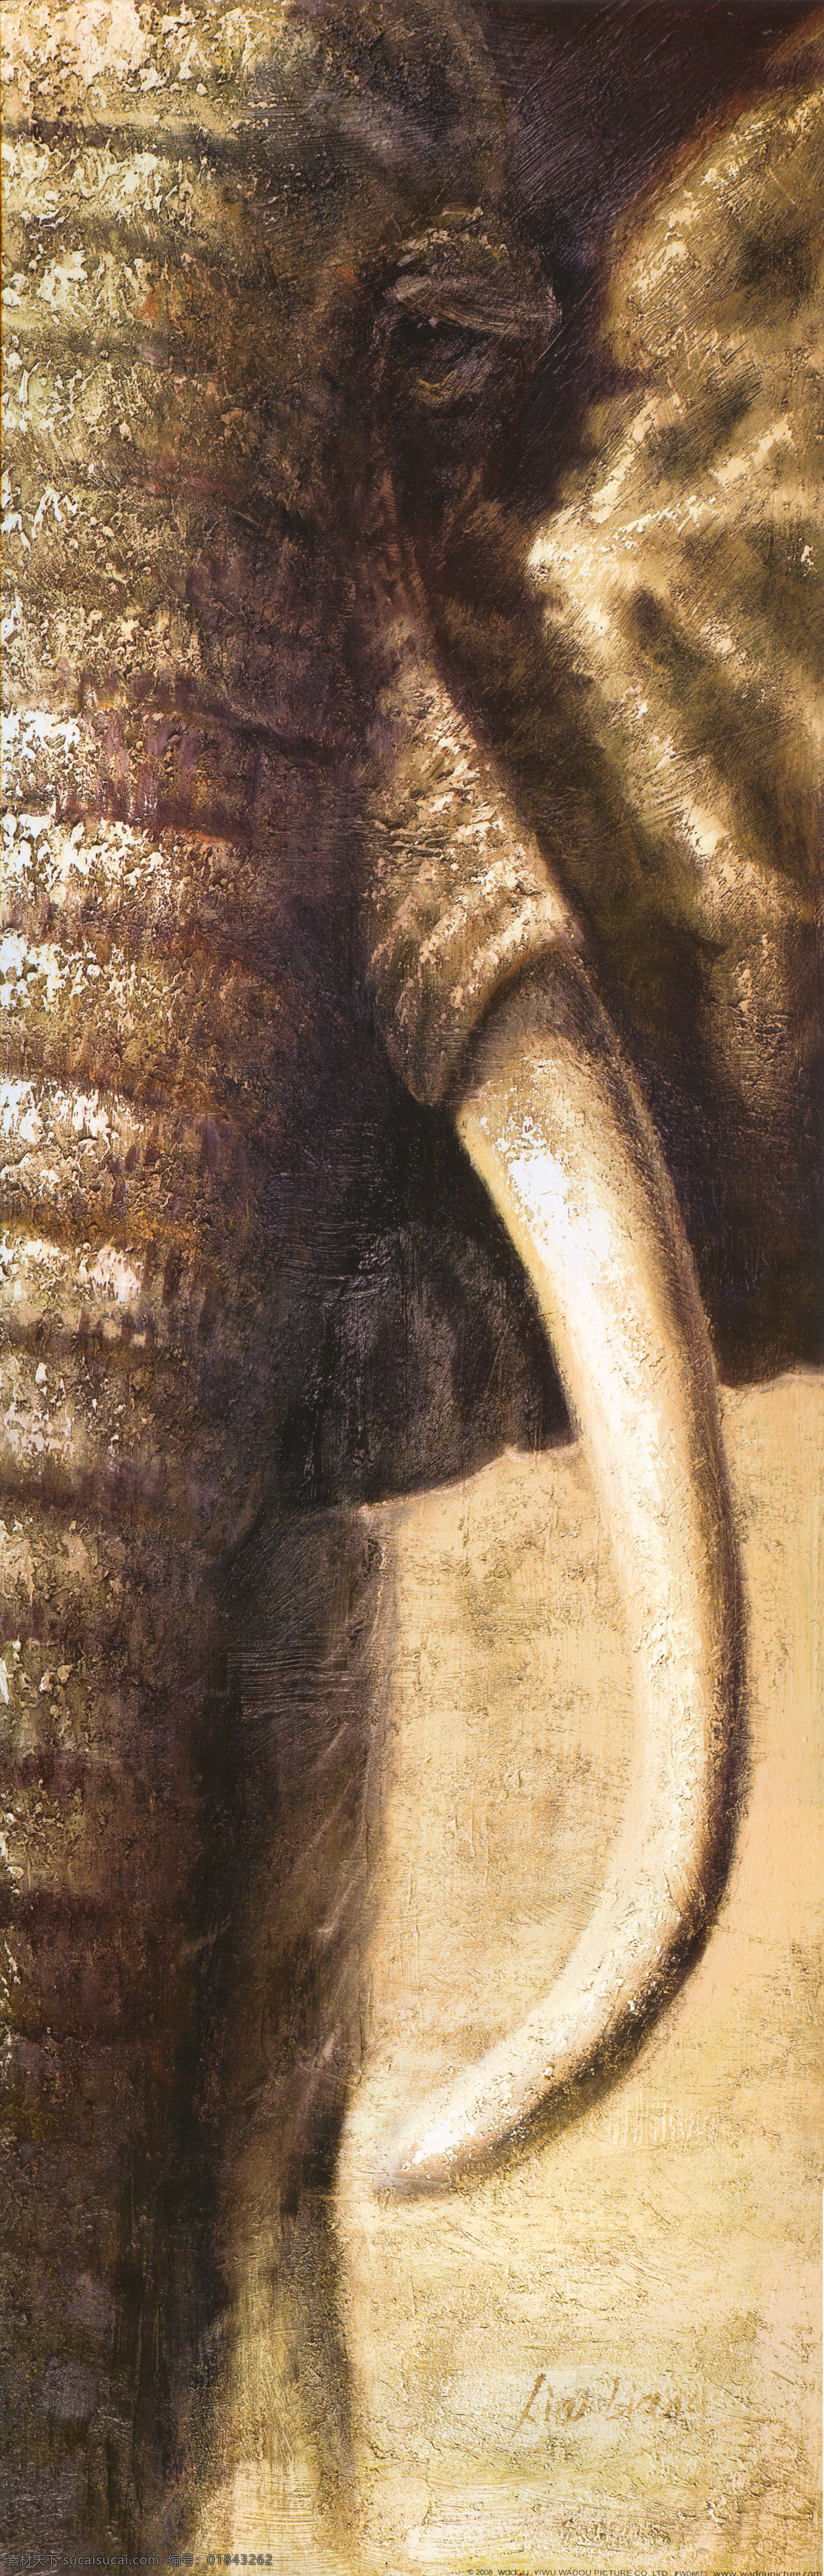 大象角 大象 象角 野生动物 绘画书法 文化艺术